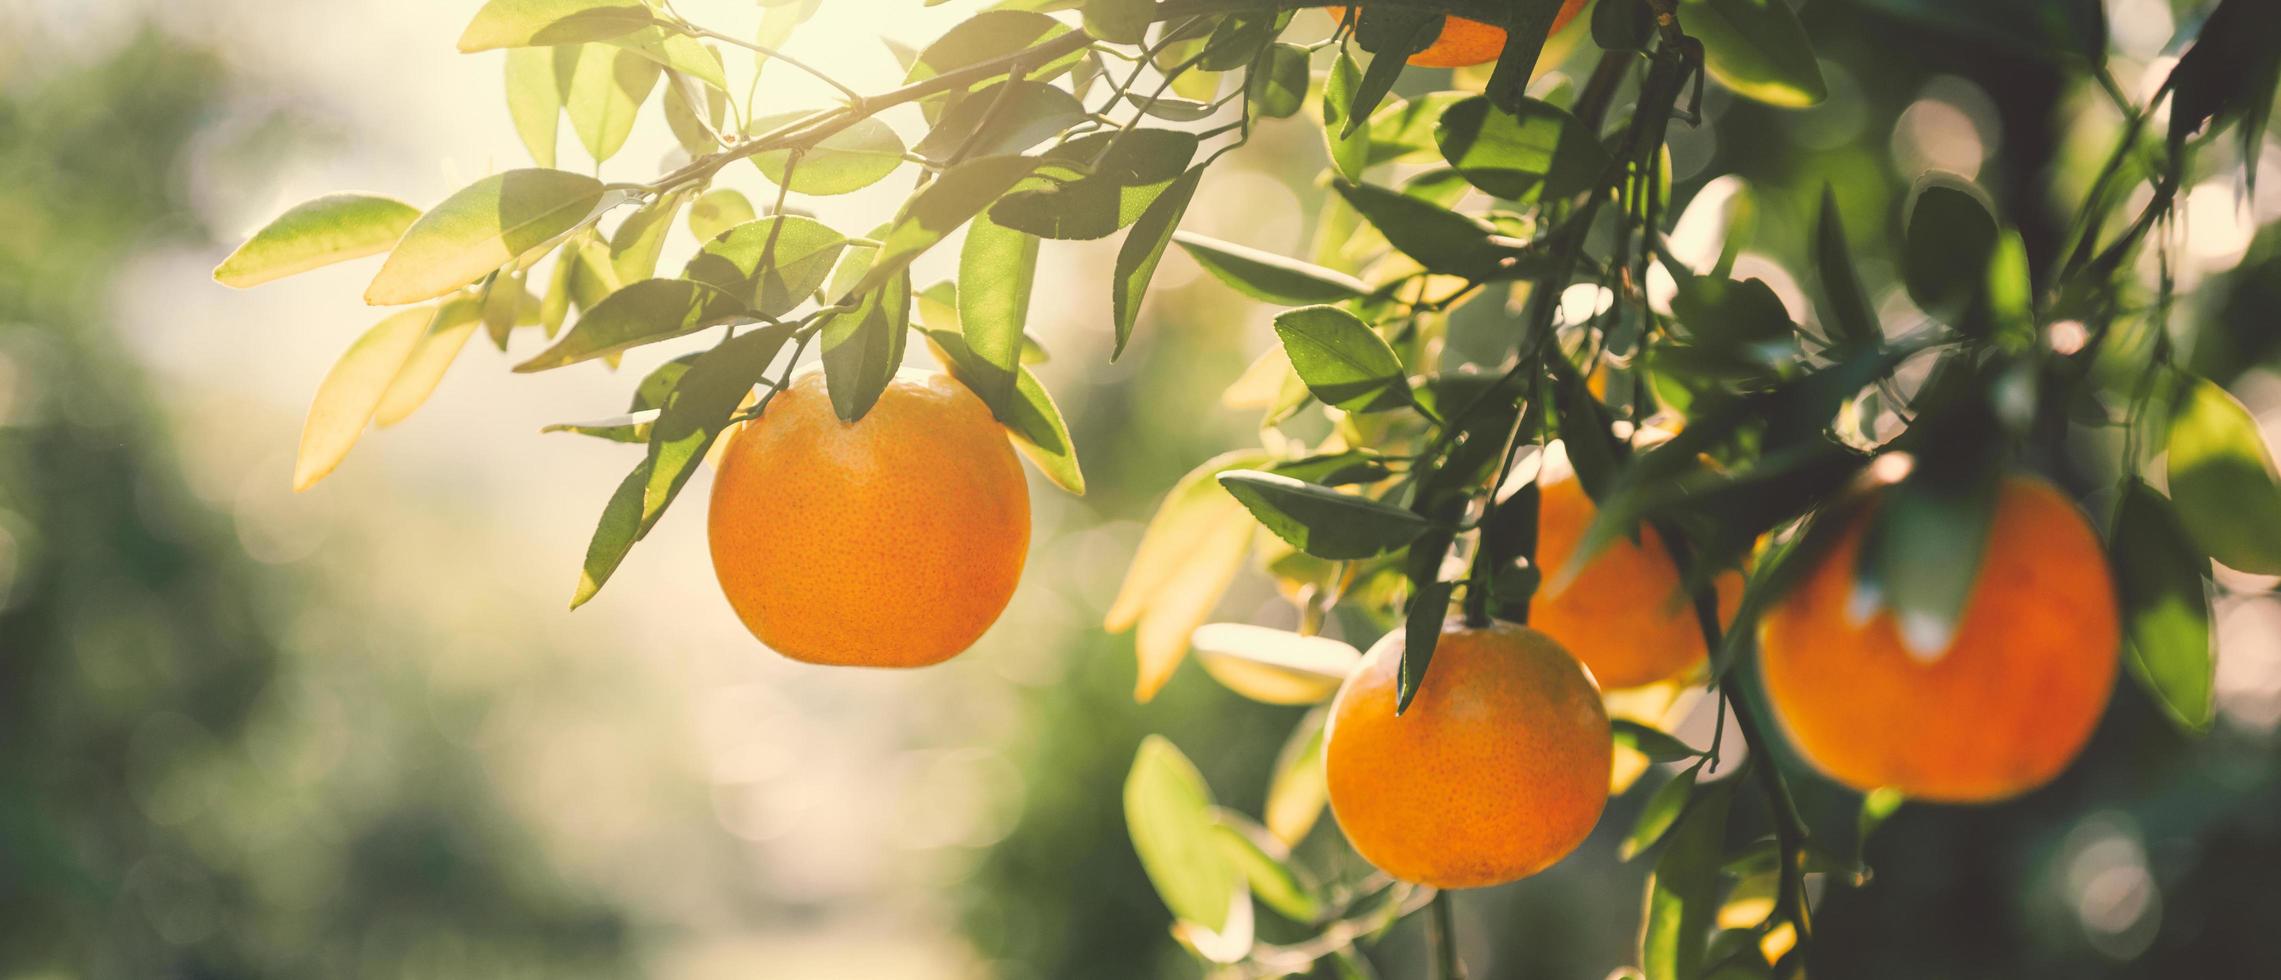 färsk apelsiner på träd i bruka den där är handla om till skörda med solsken foto